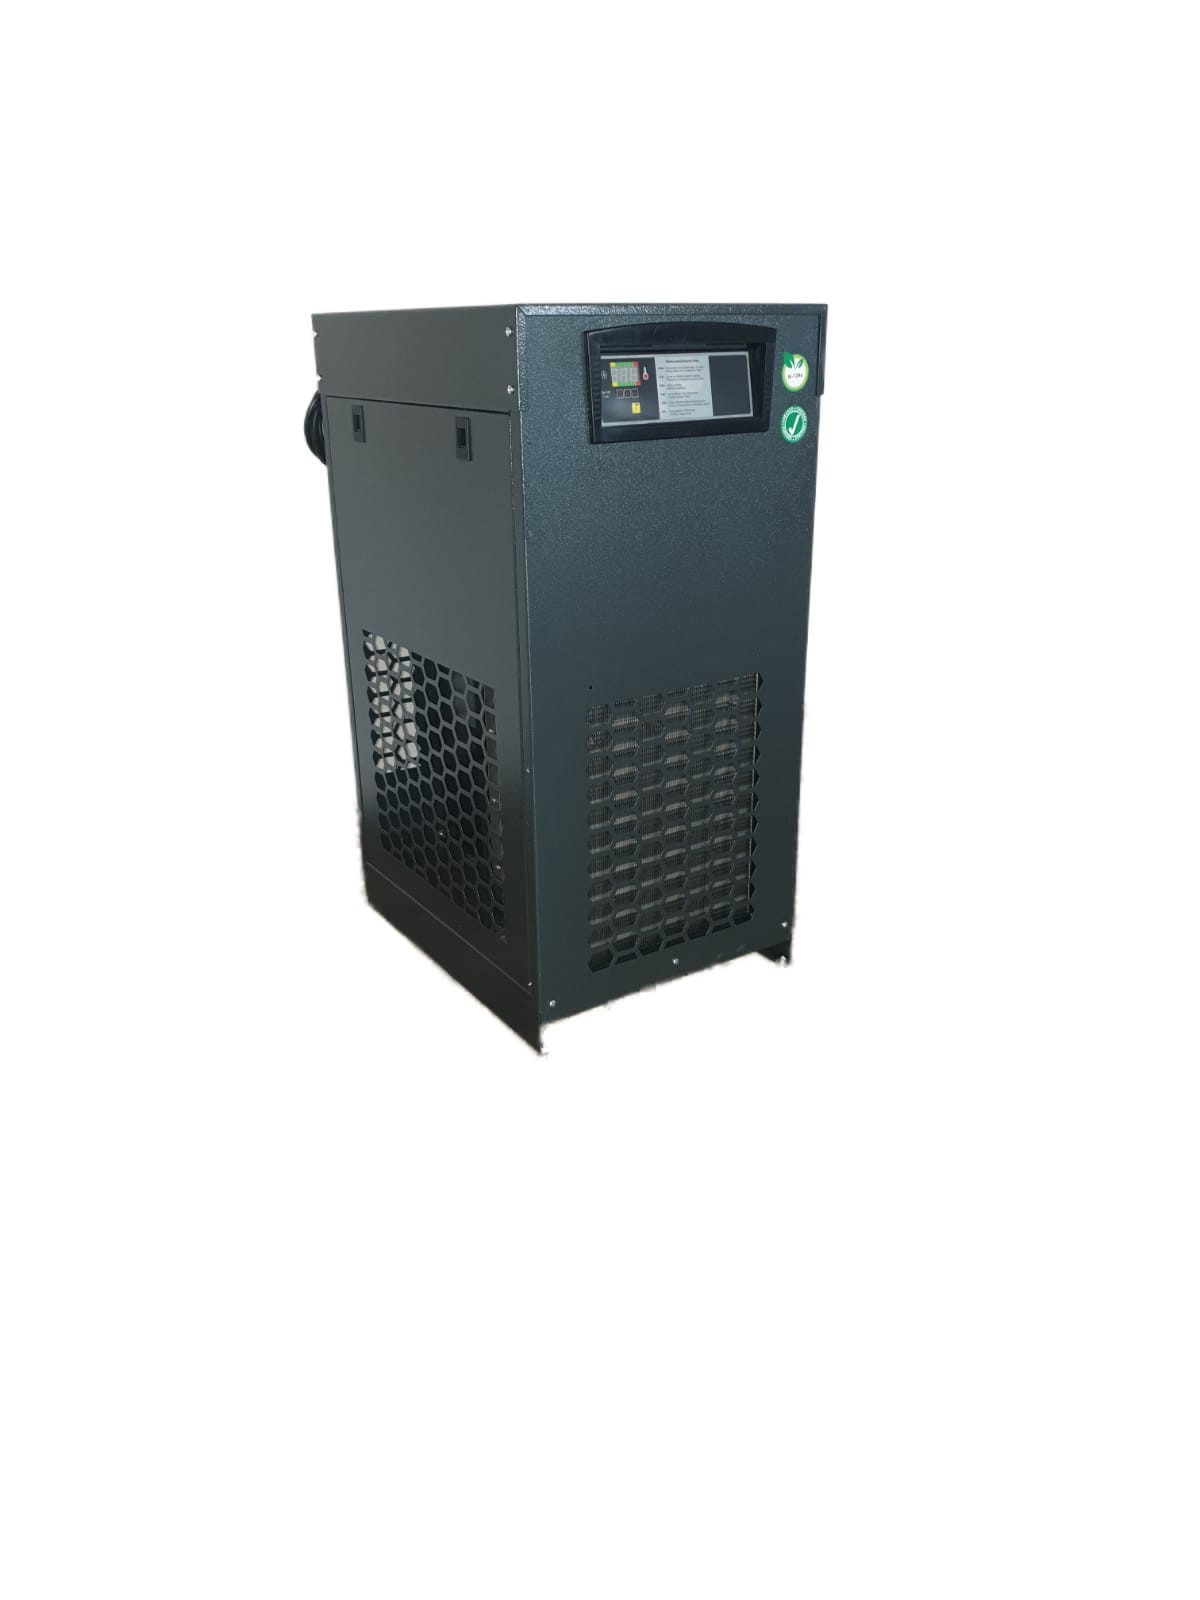 Druckluftkältetrockner PDK 1200 G1/2 Durchfluss 72 m³/h / 1200 l/min